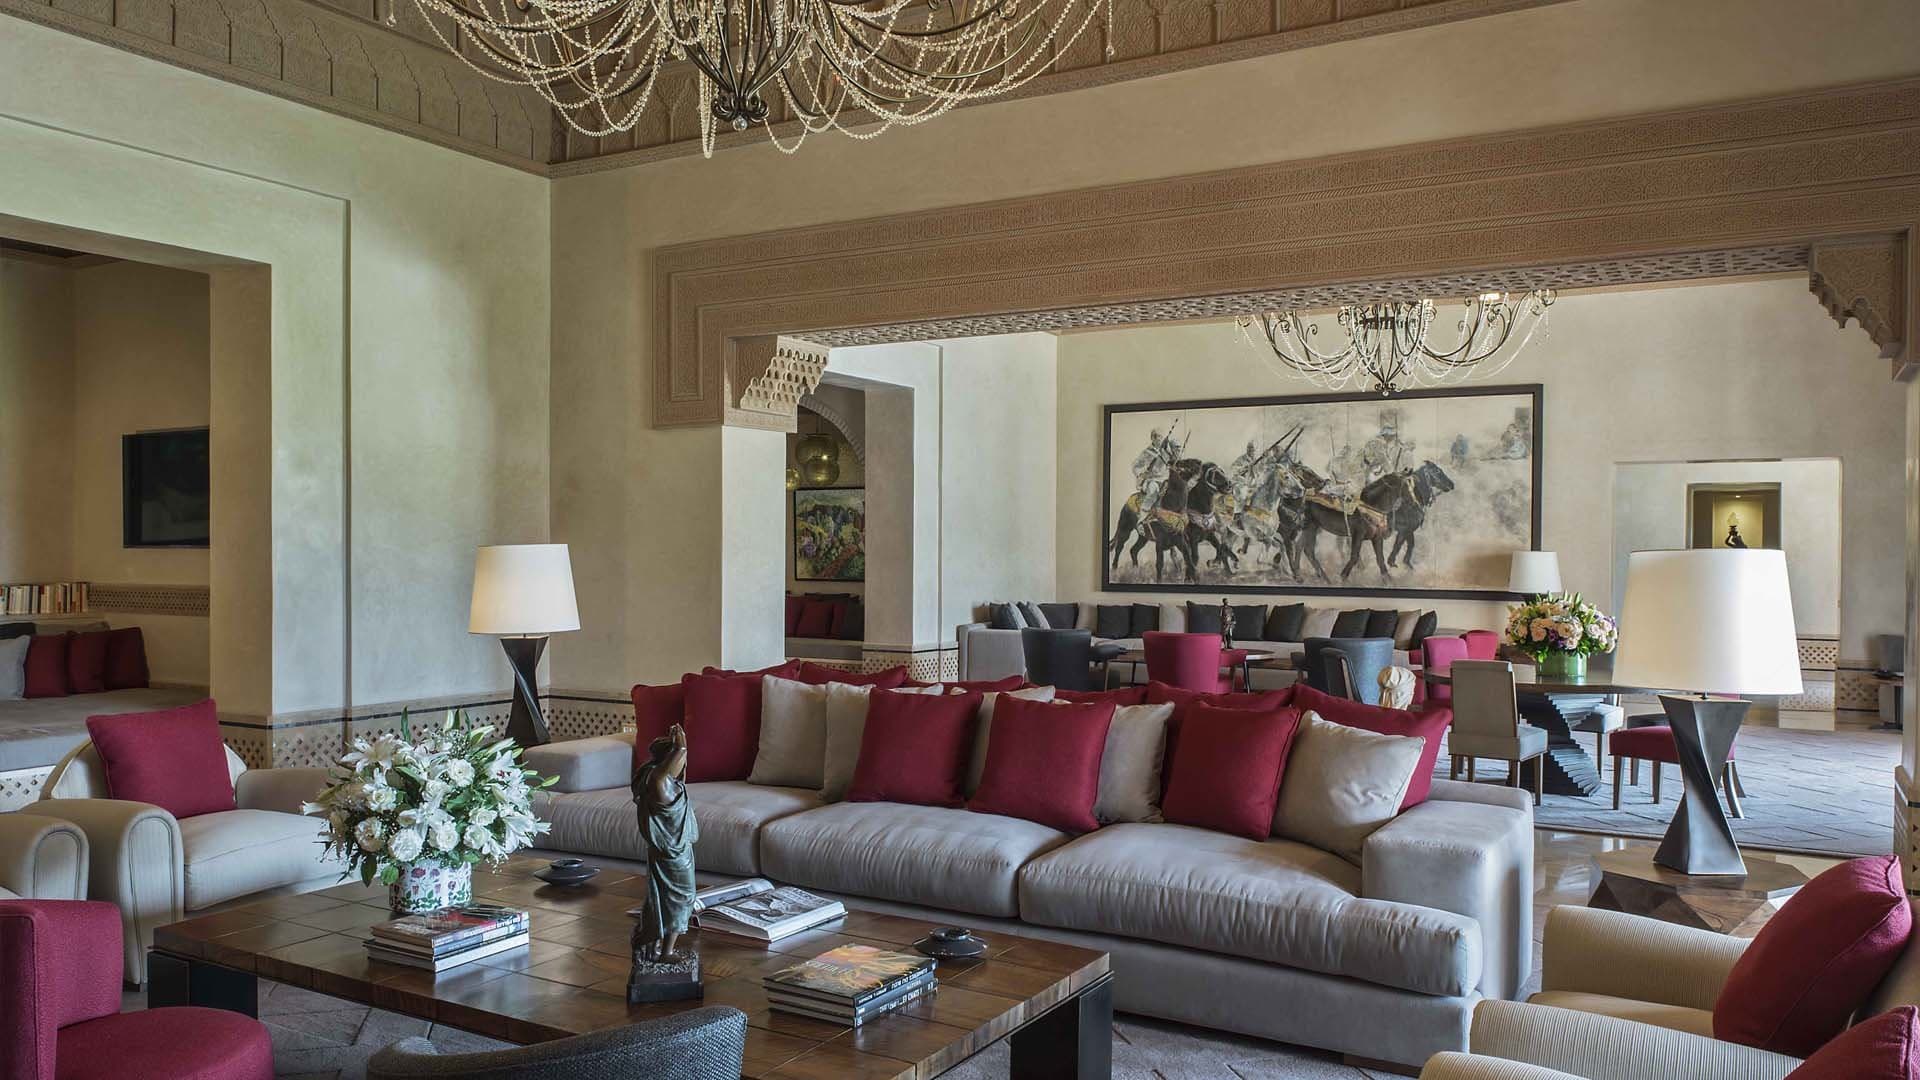 10 Bedroom Villa For Sale Marrakech Lp08720 Fa5a4b215319d80.jpg